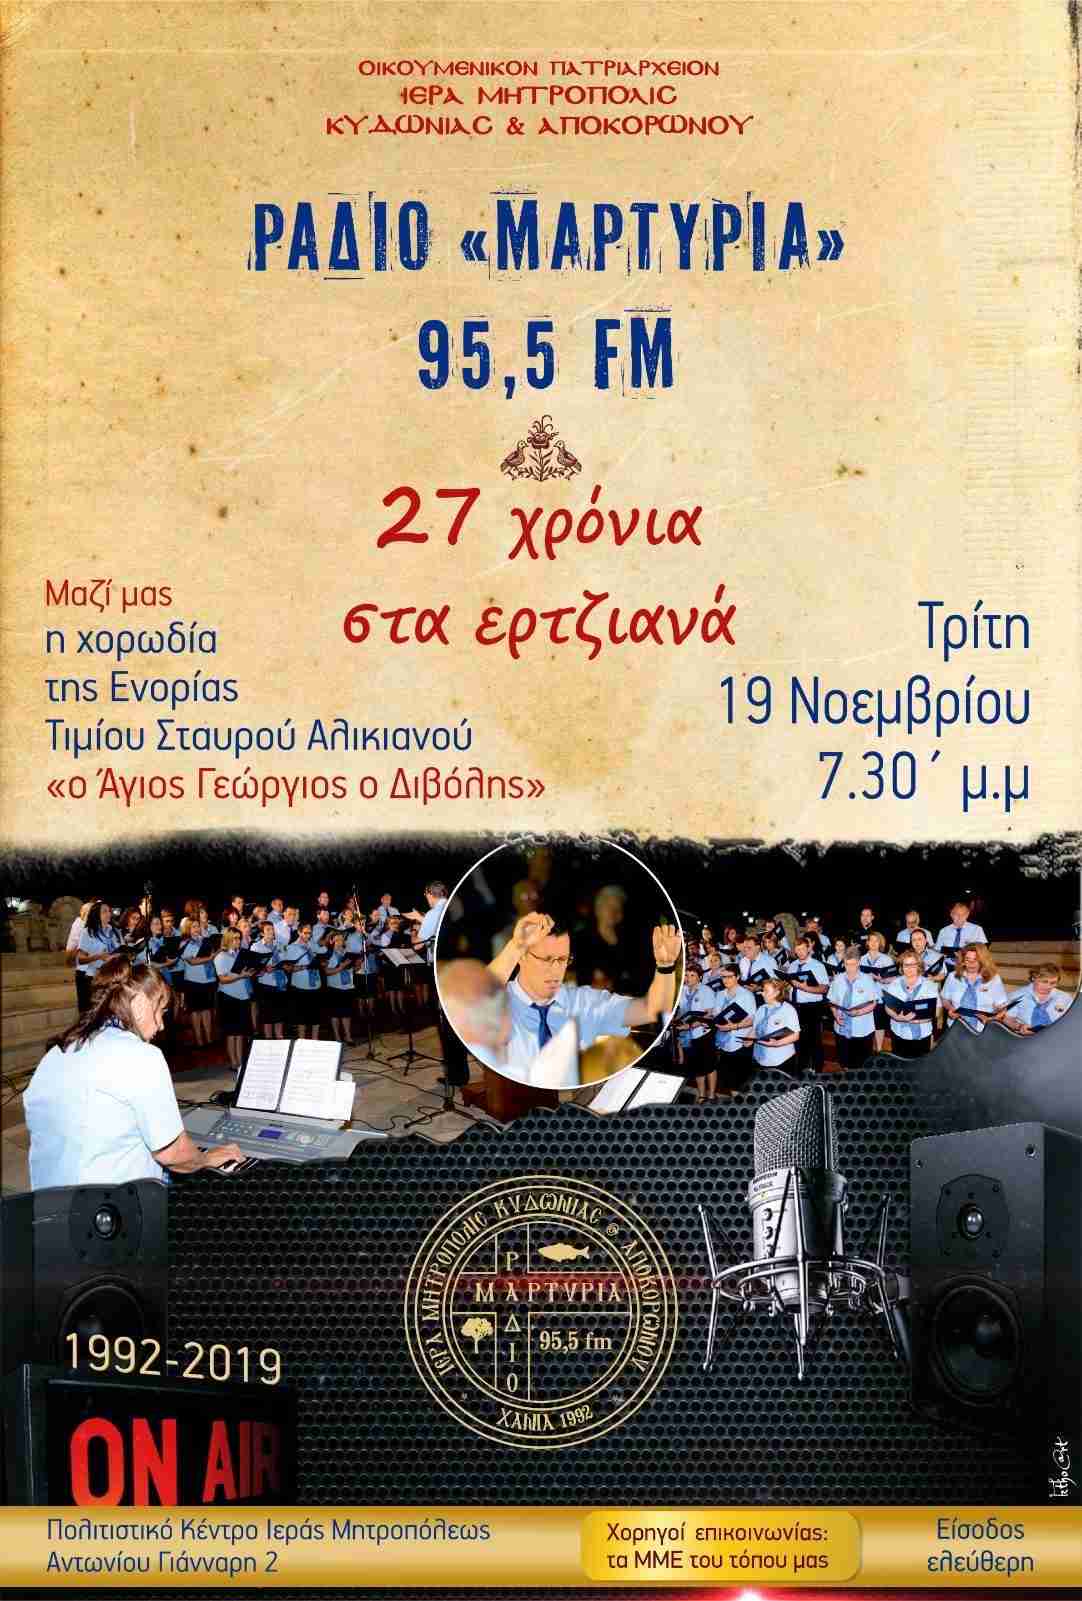 Την Τρίτη 19 Νοεμβρίου 2019 Εορτάζουμε τα 27 χρόνια του Ραδιοφωνικού Σταθμού <<Μαρτυρία>> της Ιεράς Μητροπόλεως Κυδωνίας & Αποκορώνου και παρουσιάζουν το νέο   Πρόγραμμα